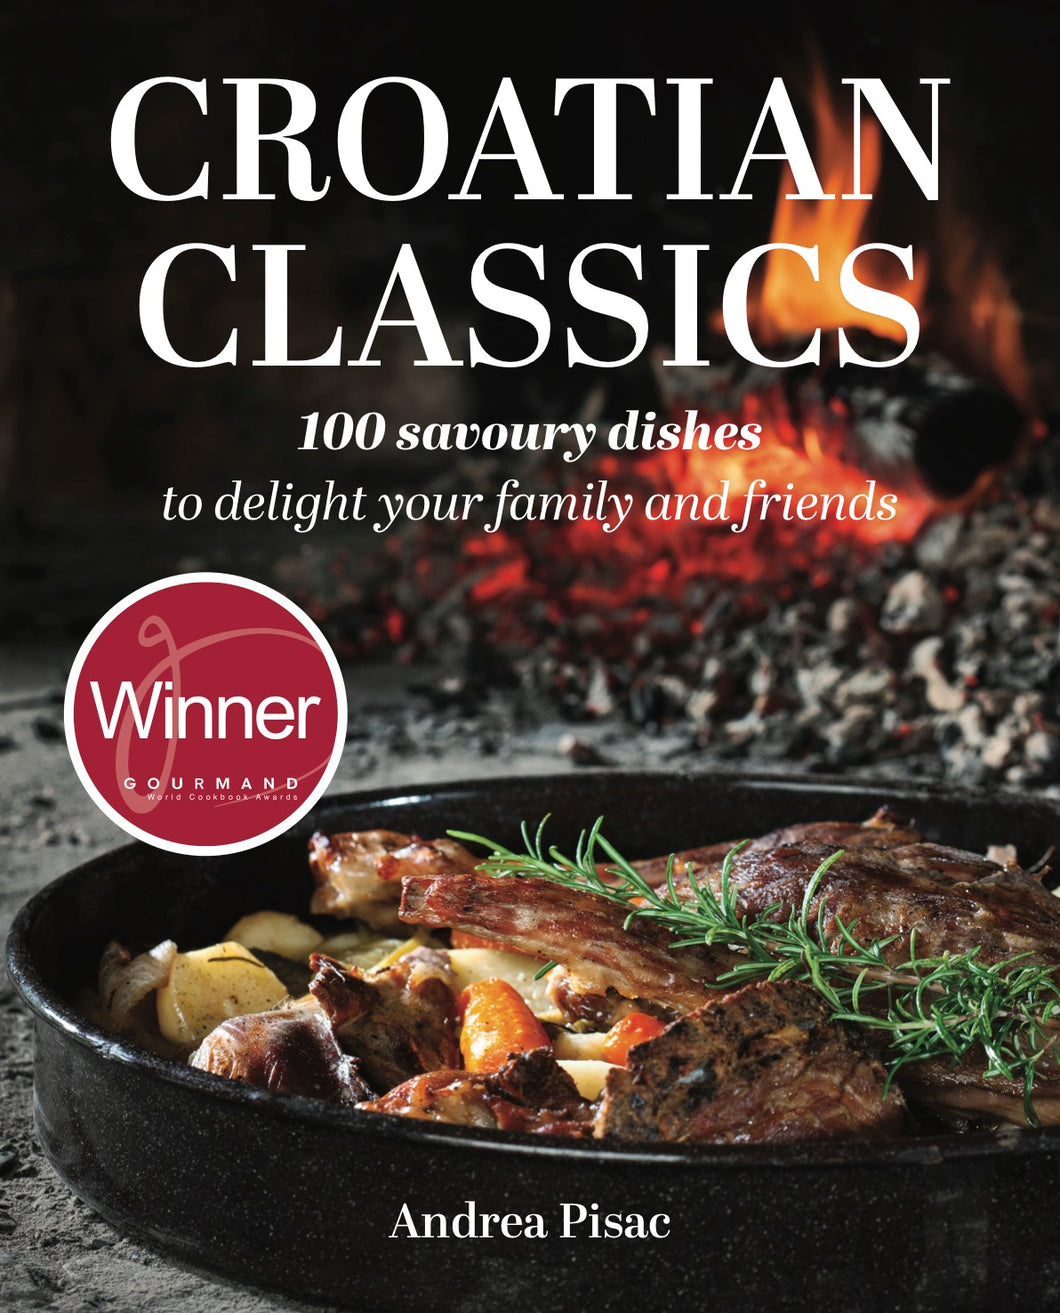 Croatian Classics cookbook